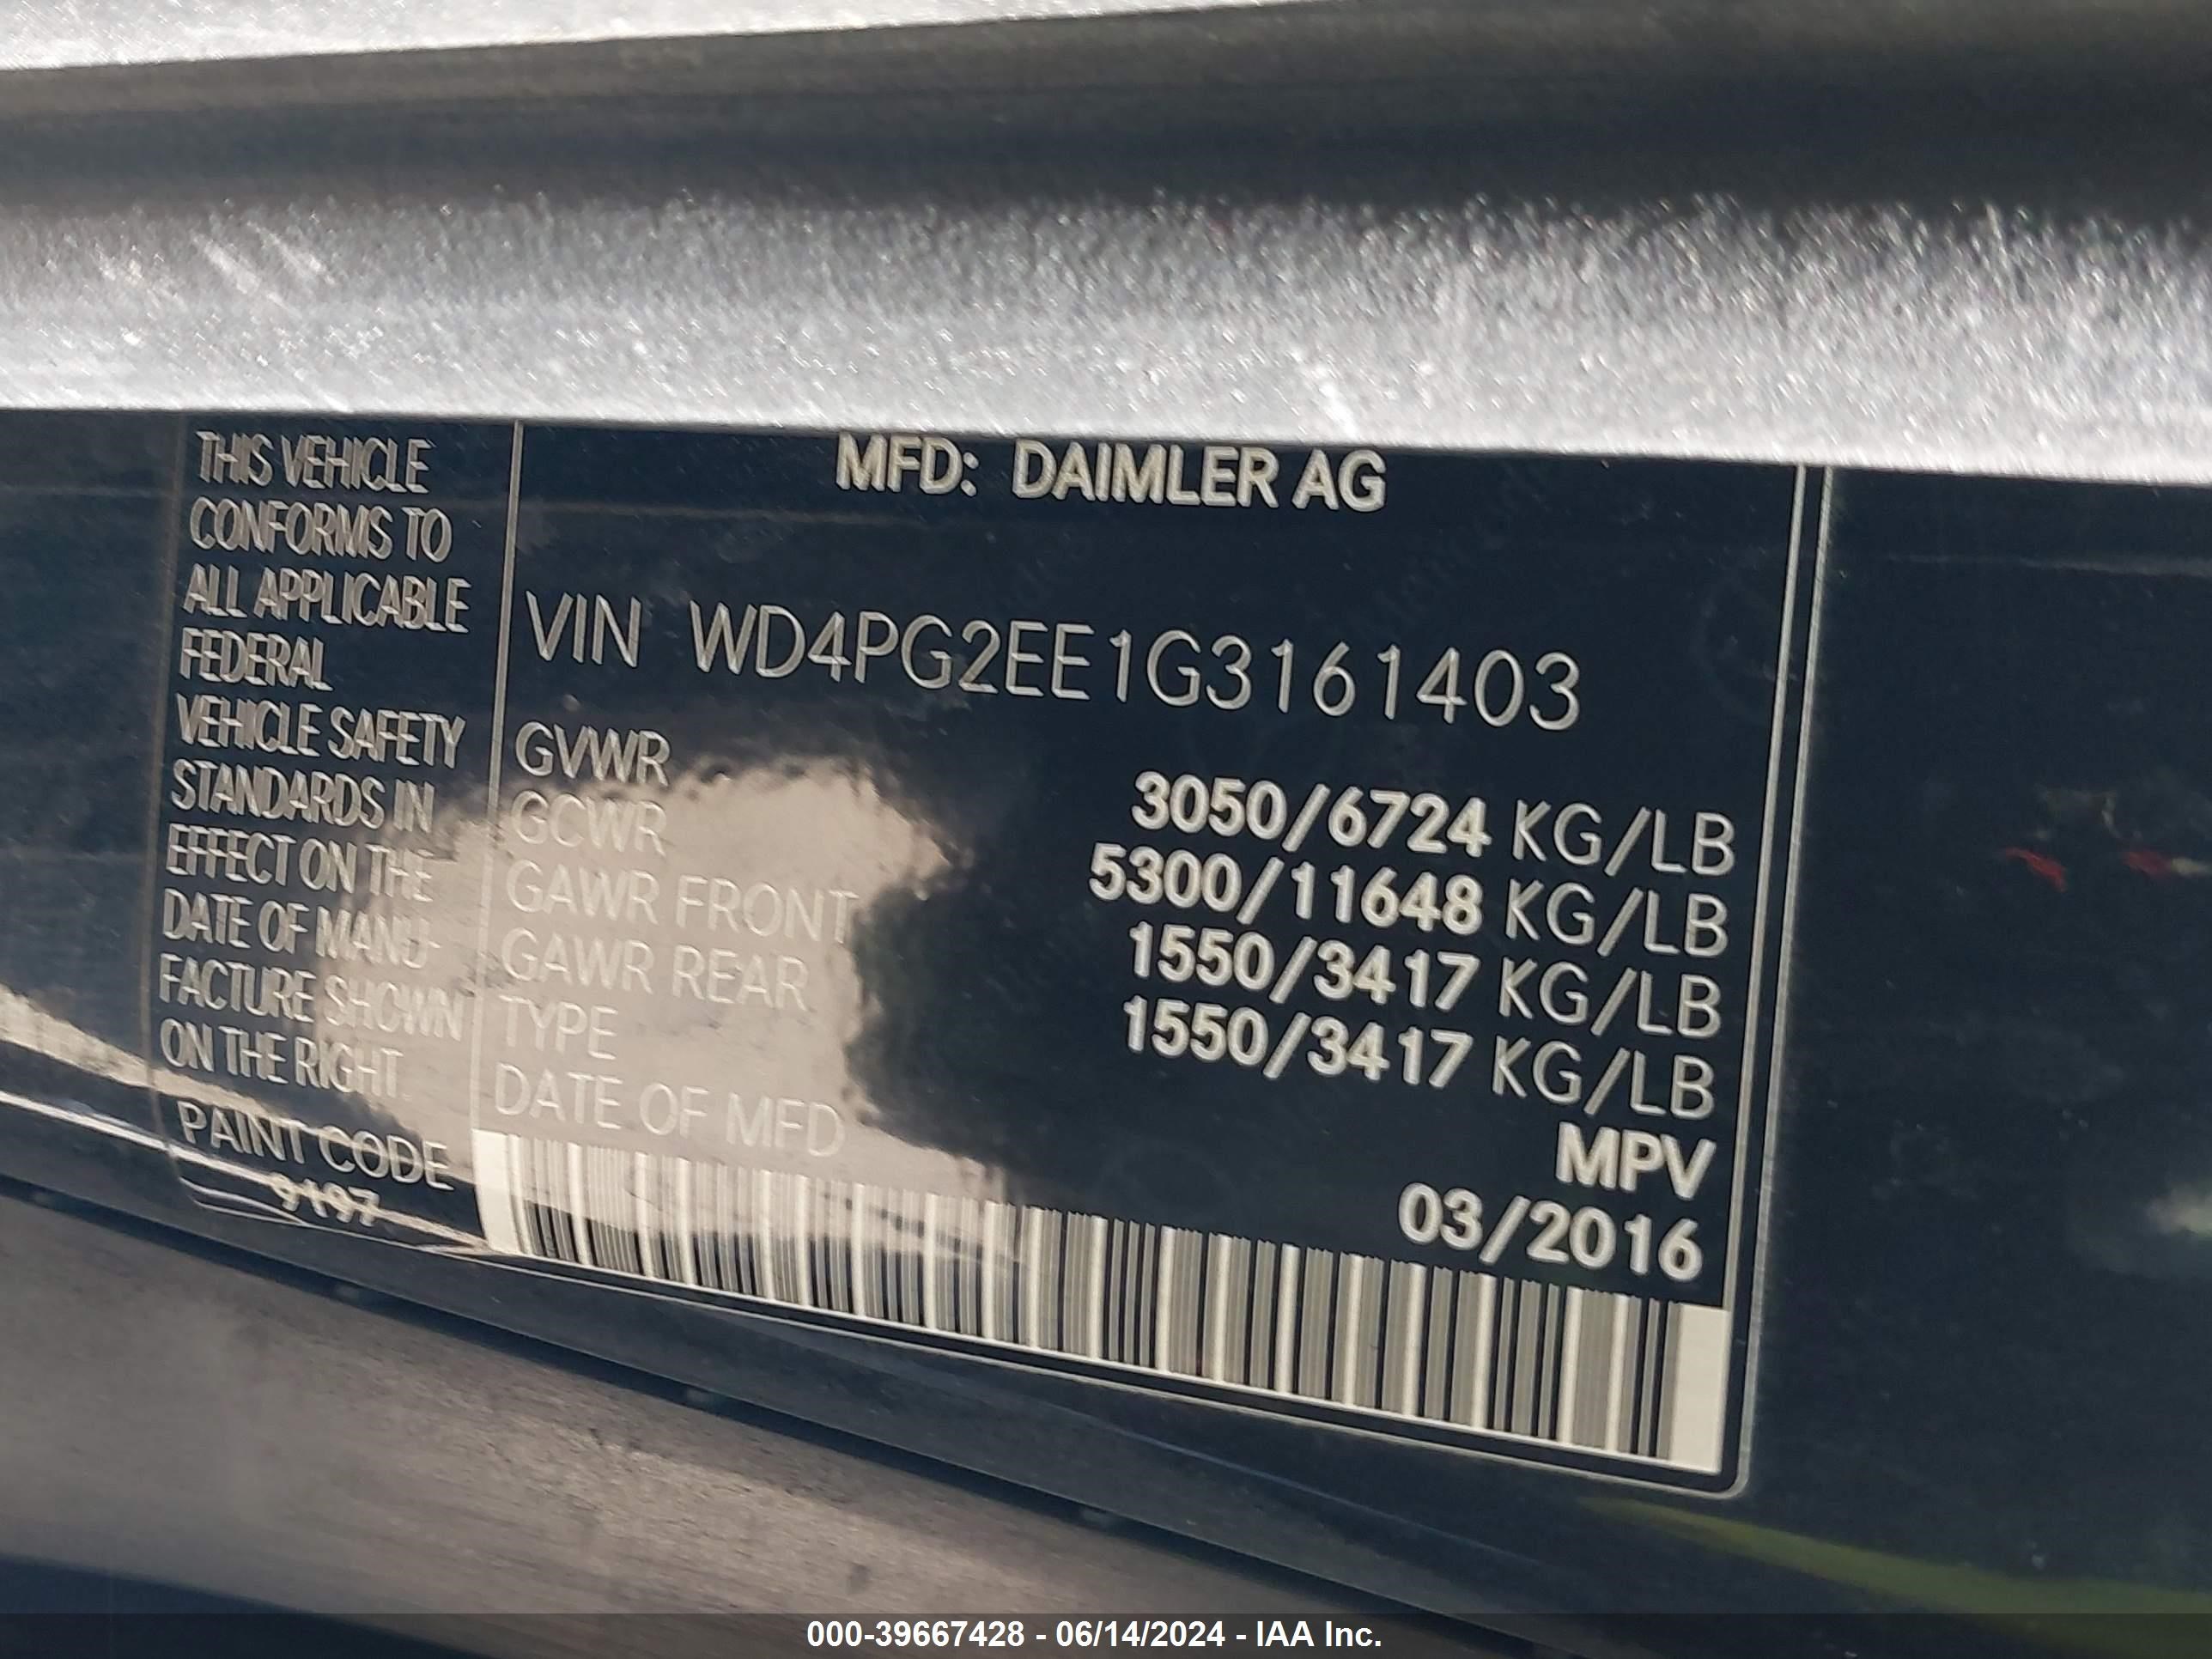 2016 Mercedes-Benz Metris vin: WD4PG2EE1G3161403